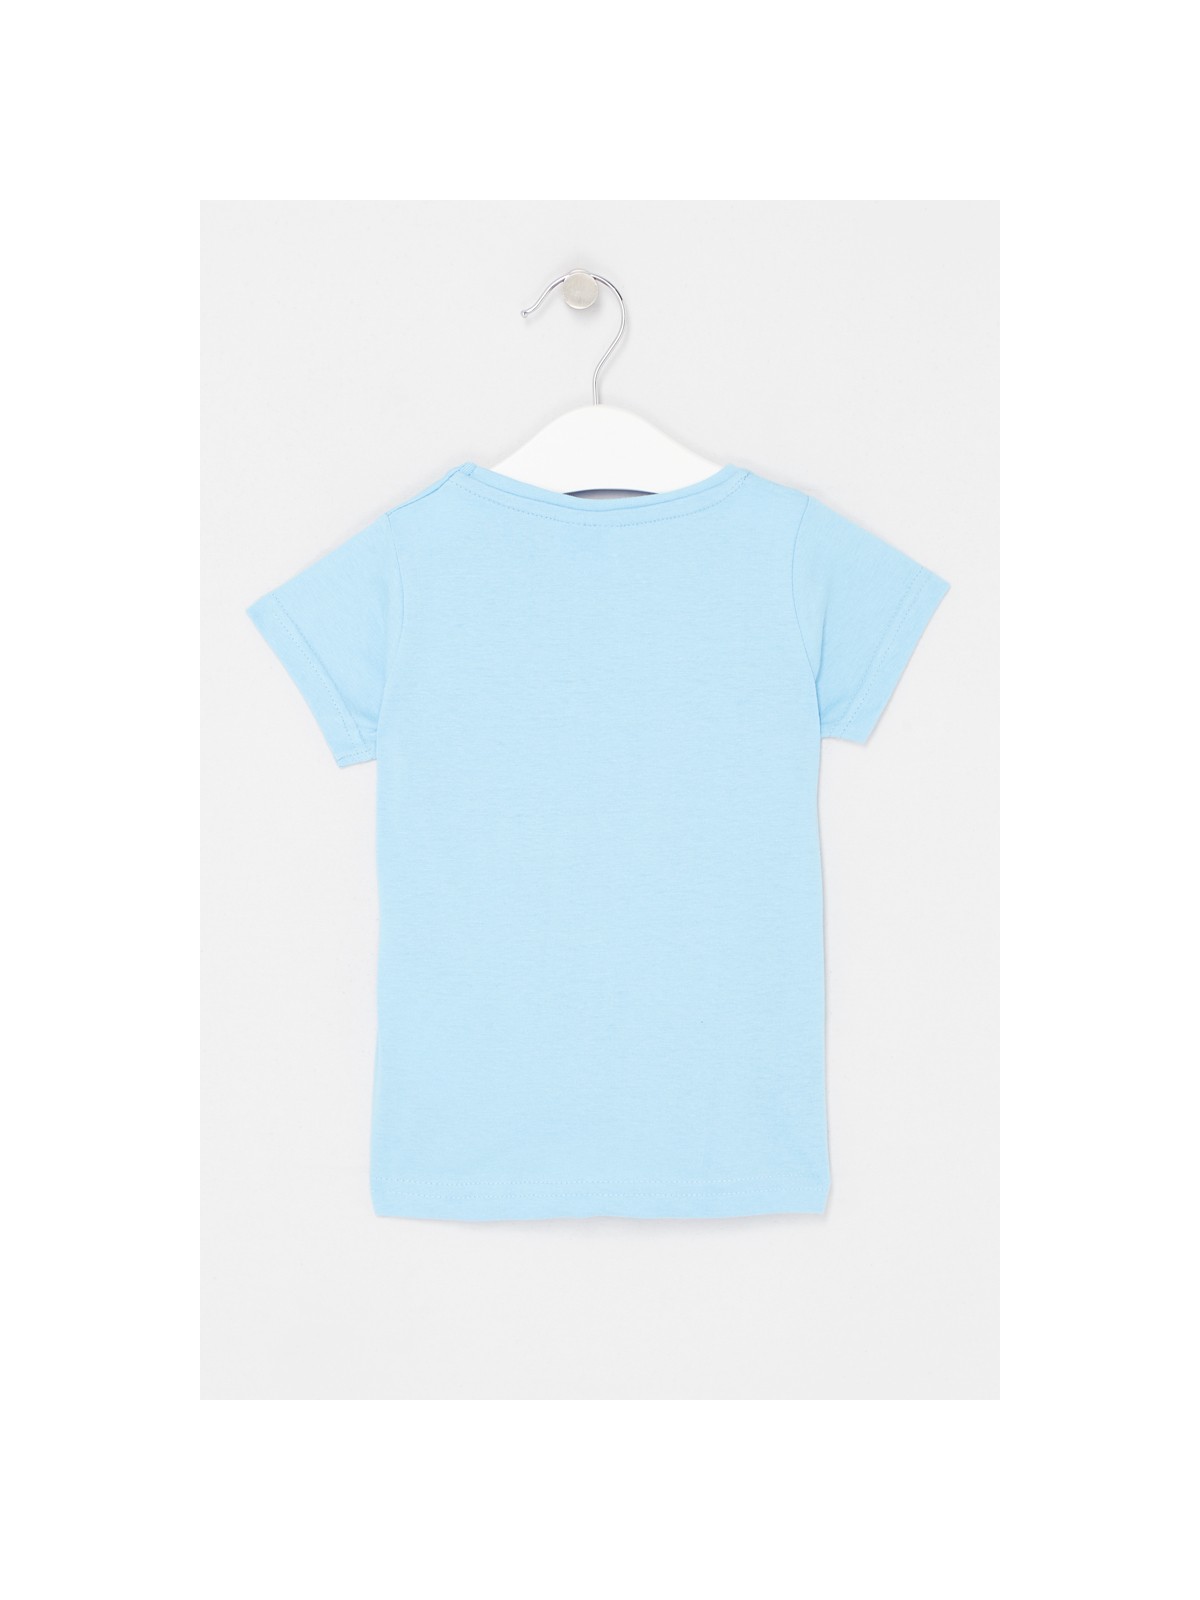 Peppa PigT-Shirt Kurzarm